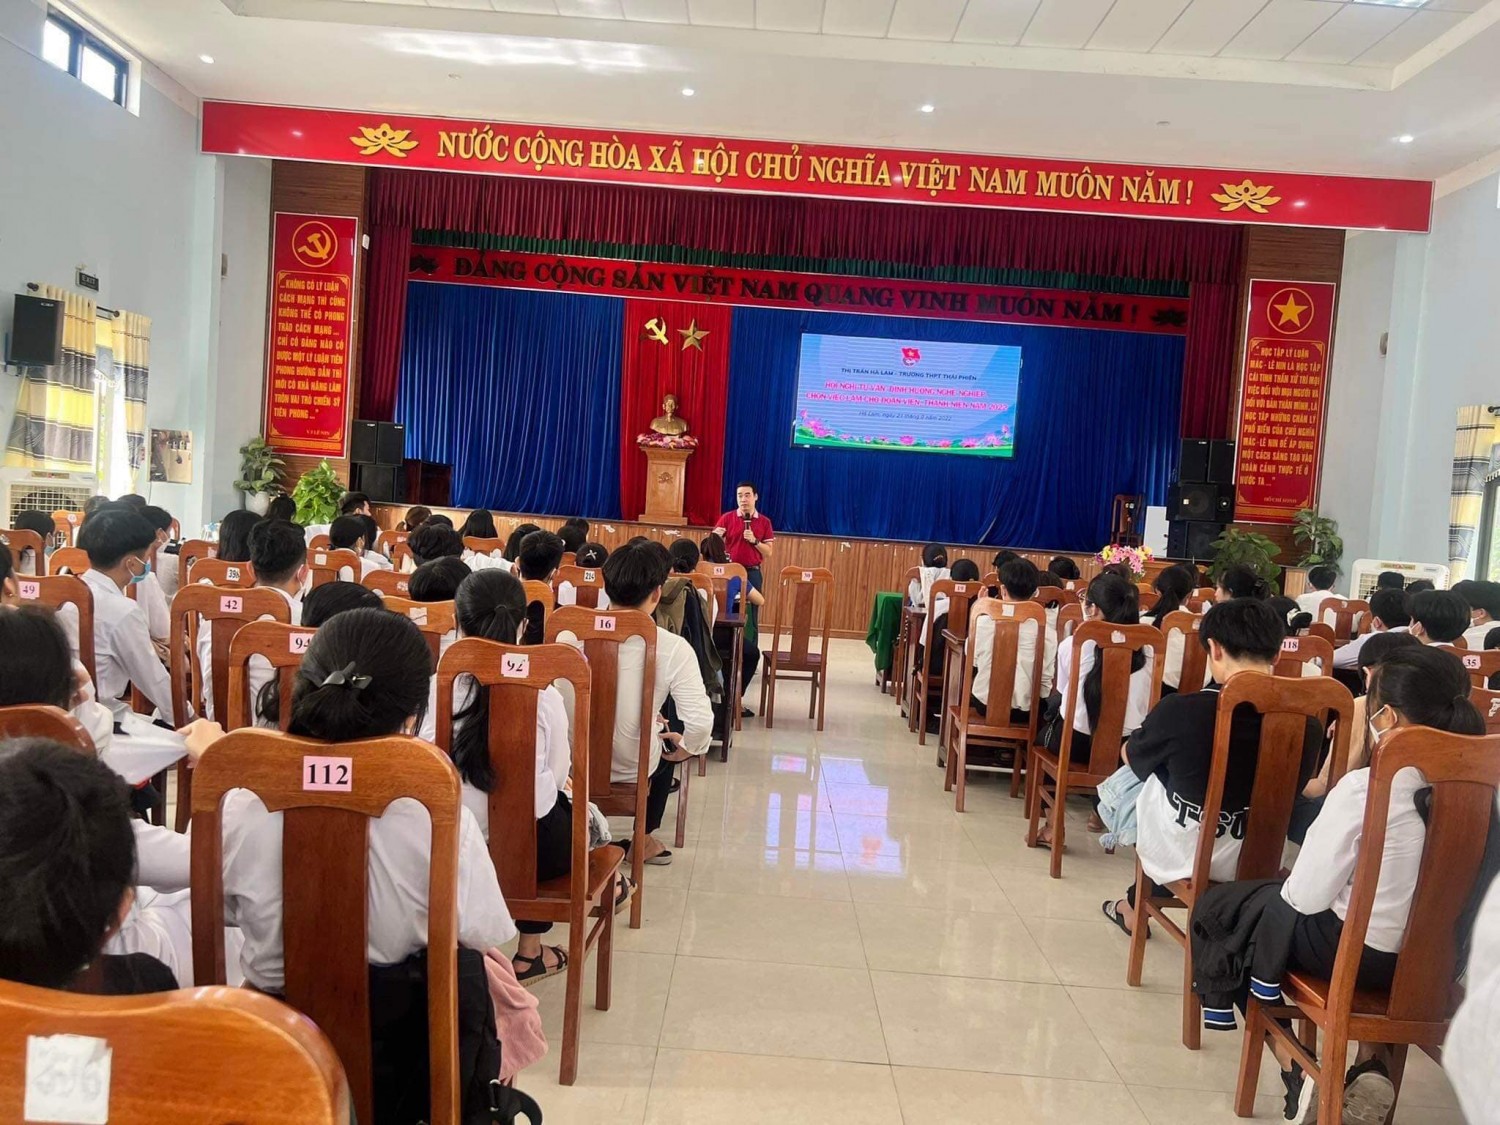 Hà Lam: Đoàn TT Hà Lam tổ chức lớp tư vấn, định hướng nghề nghiệp cho đoàn viên thanh niên trên địa bàn.